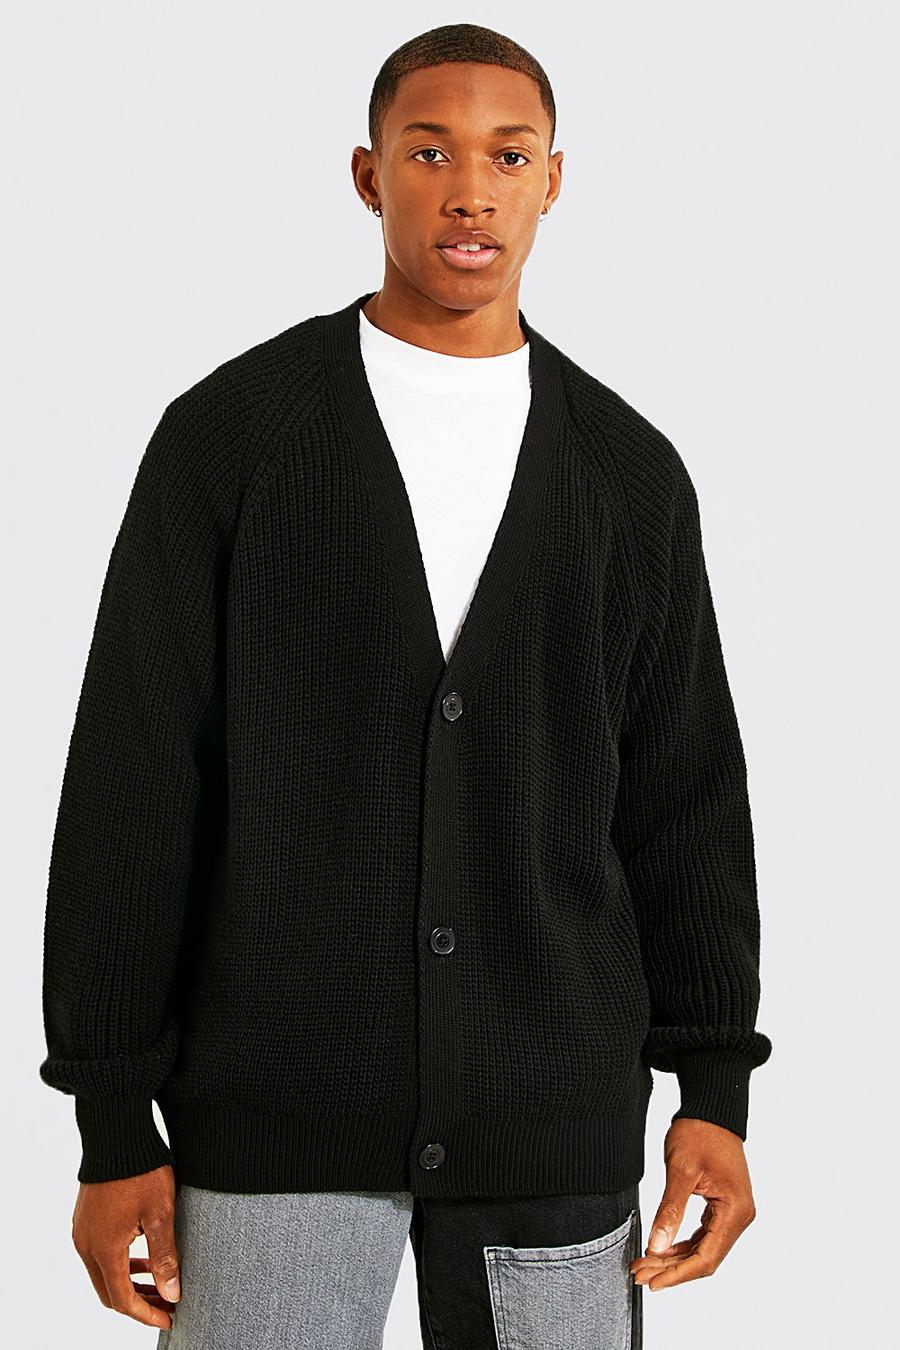 https://media.boohoo.com/i/boohoo/amm01935_black_xl/male-black-oversized-raglan-knitted-cardigan/?w=900&qlt=default&fmt.jp2.qlt=70&fmt=auto&sm=fit